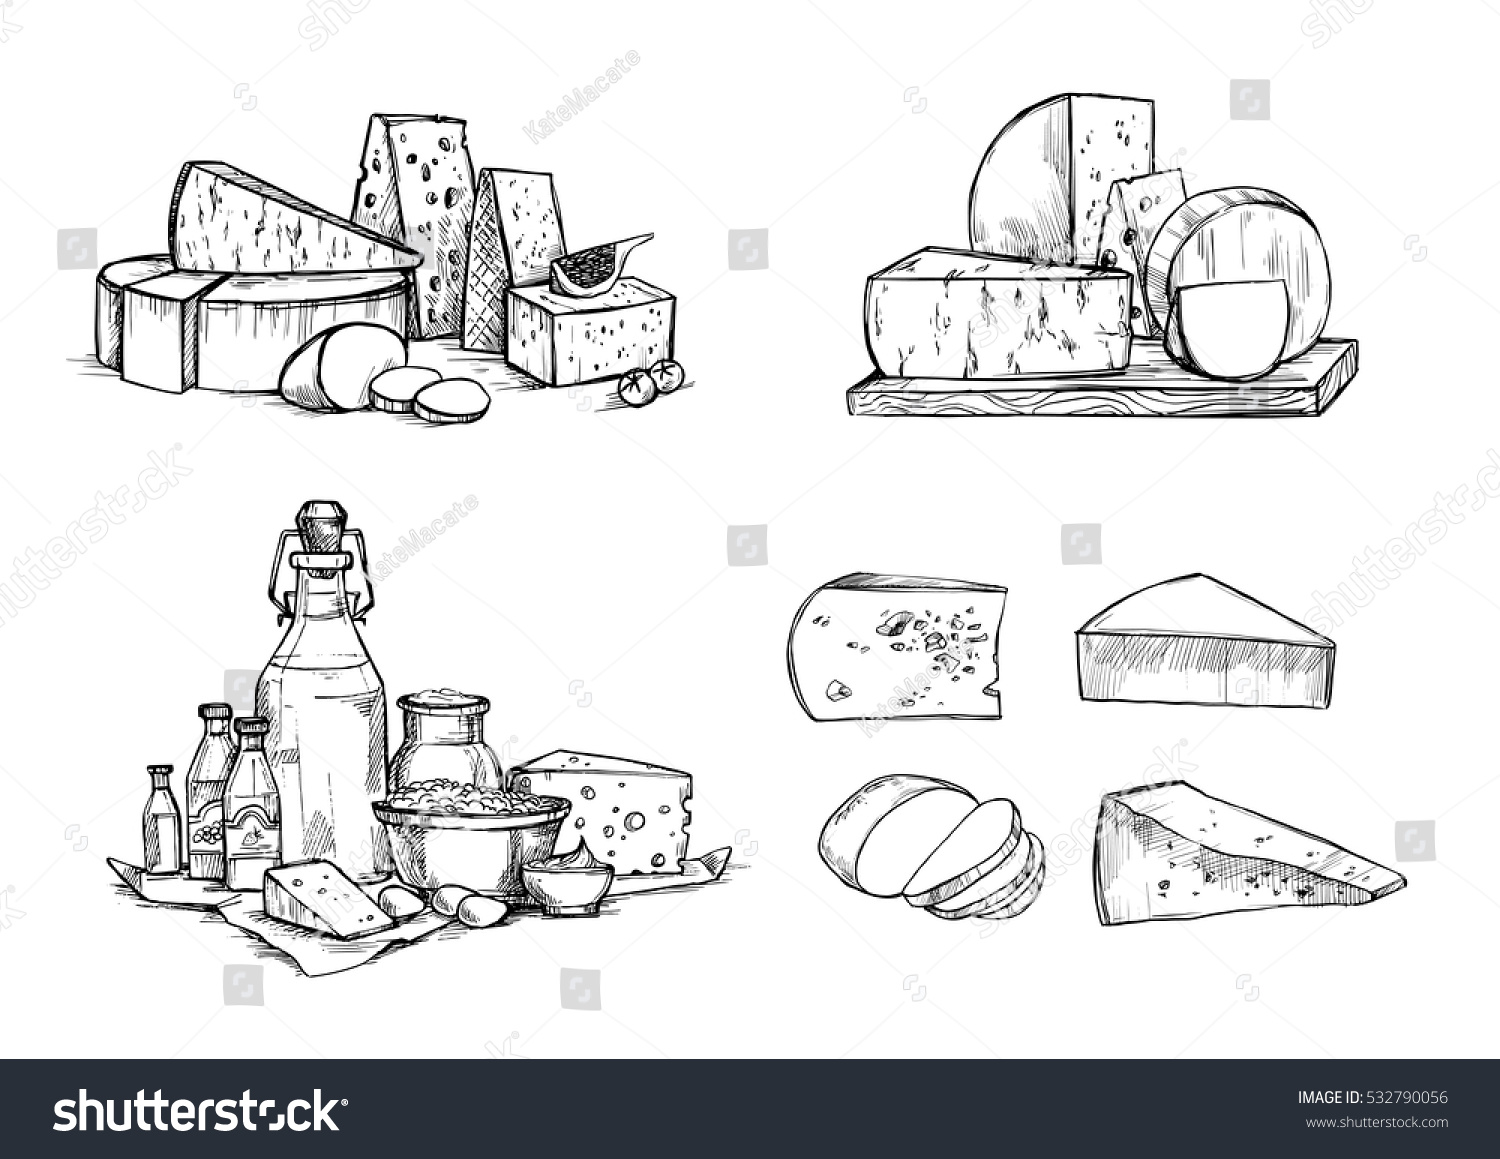 Стилизованные графические изображения сырной продукции